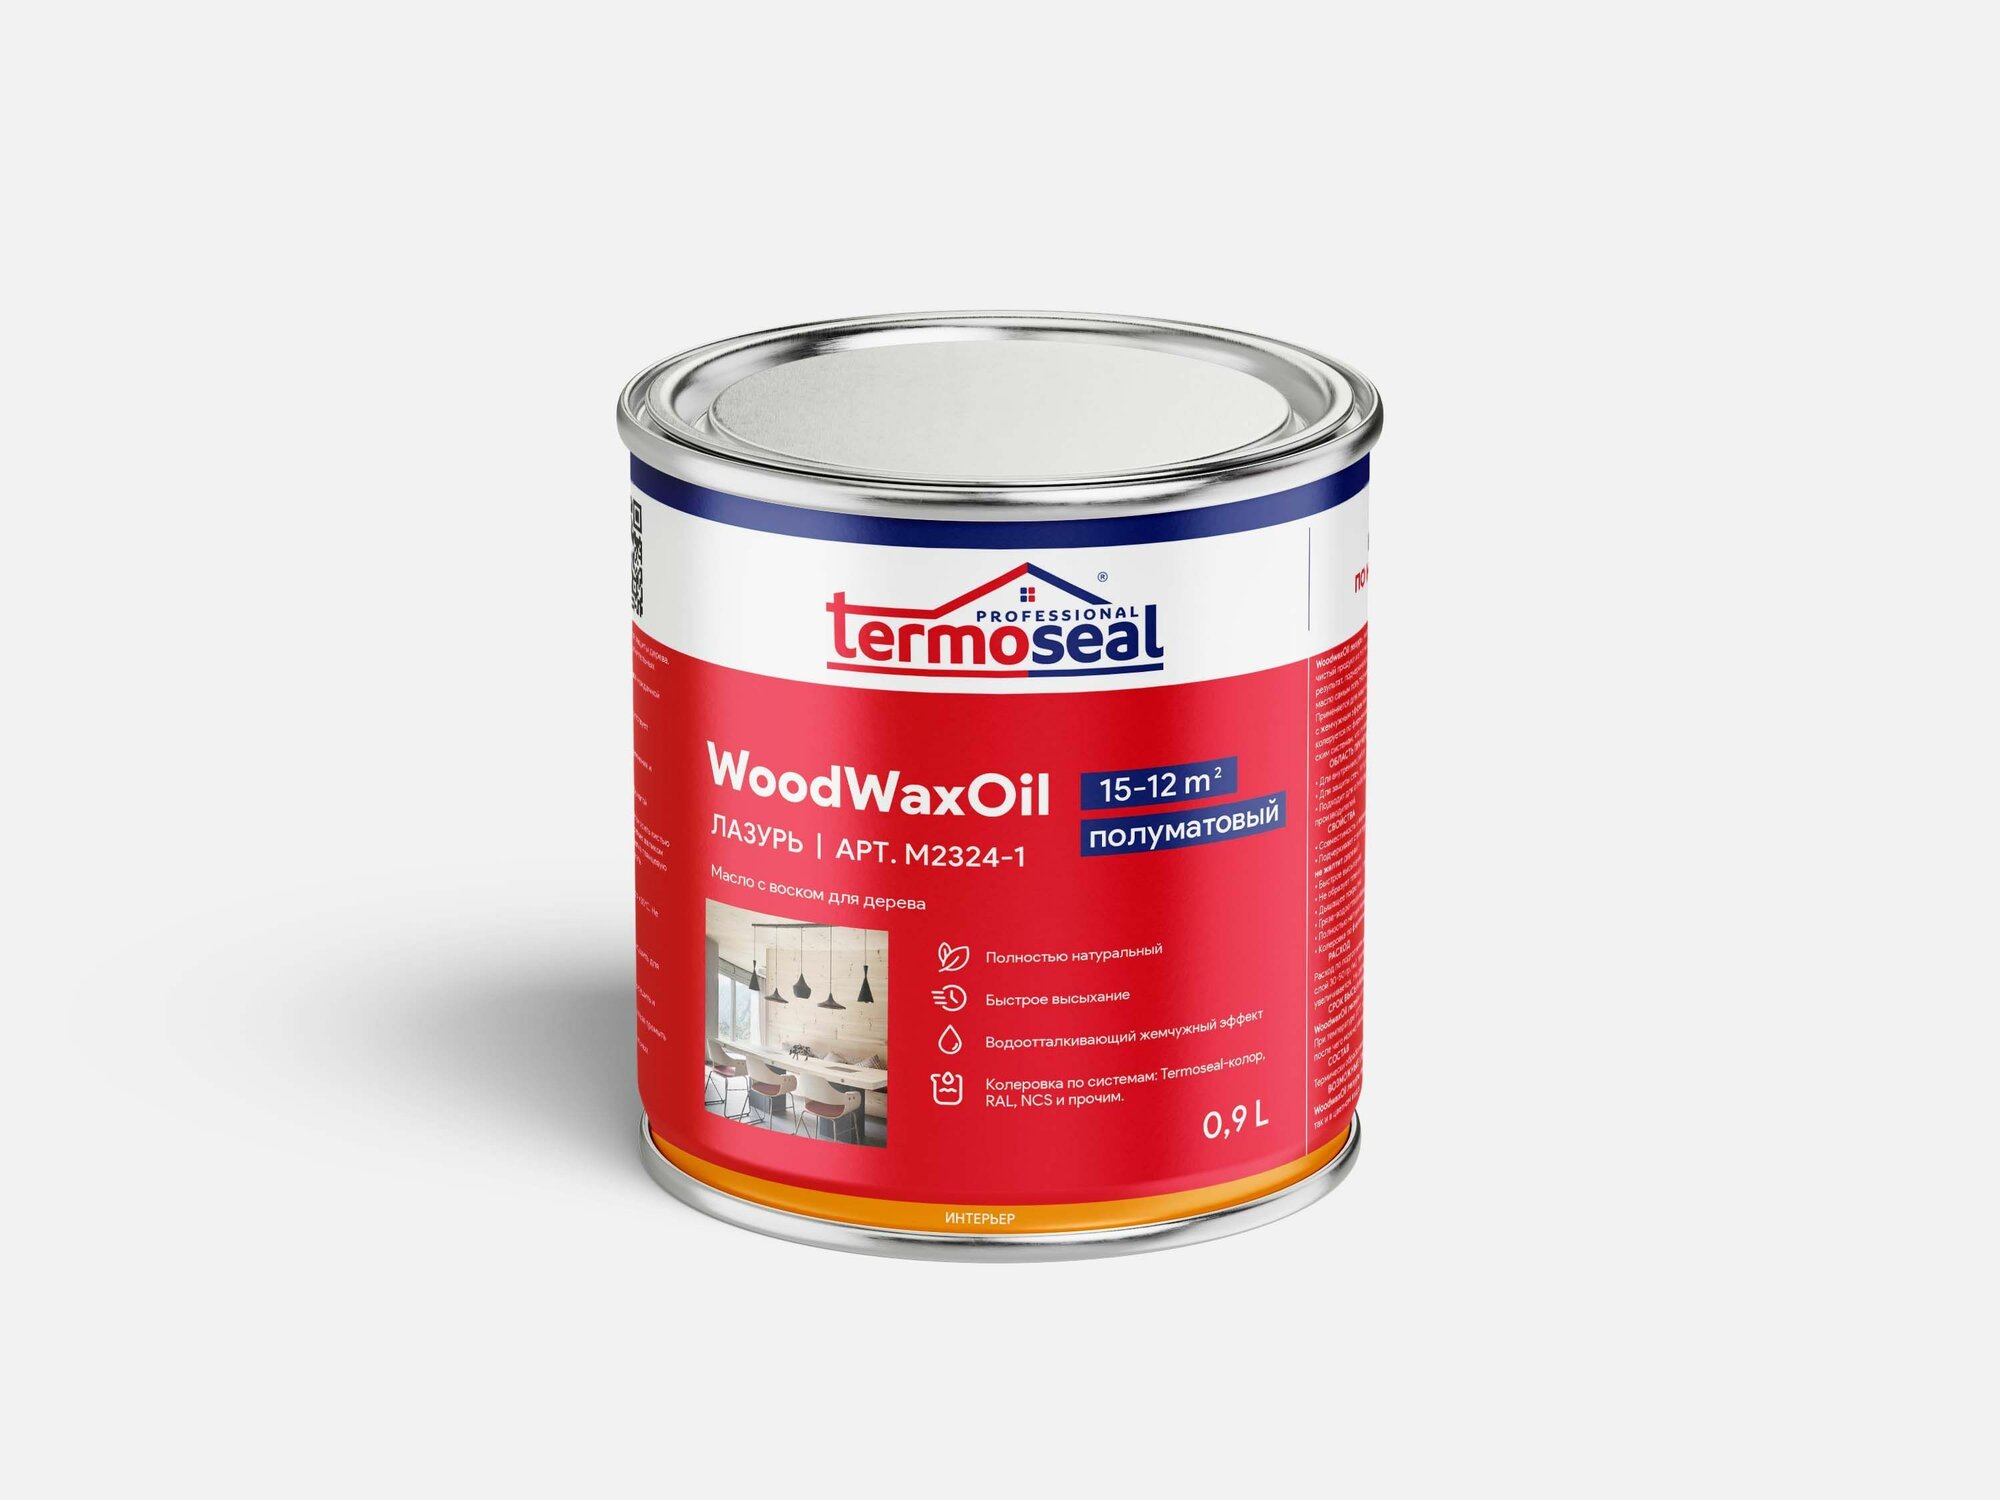 TermoSeal Woodwax Oil масло-лазурь с воском, Снежный белый